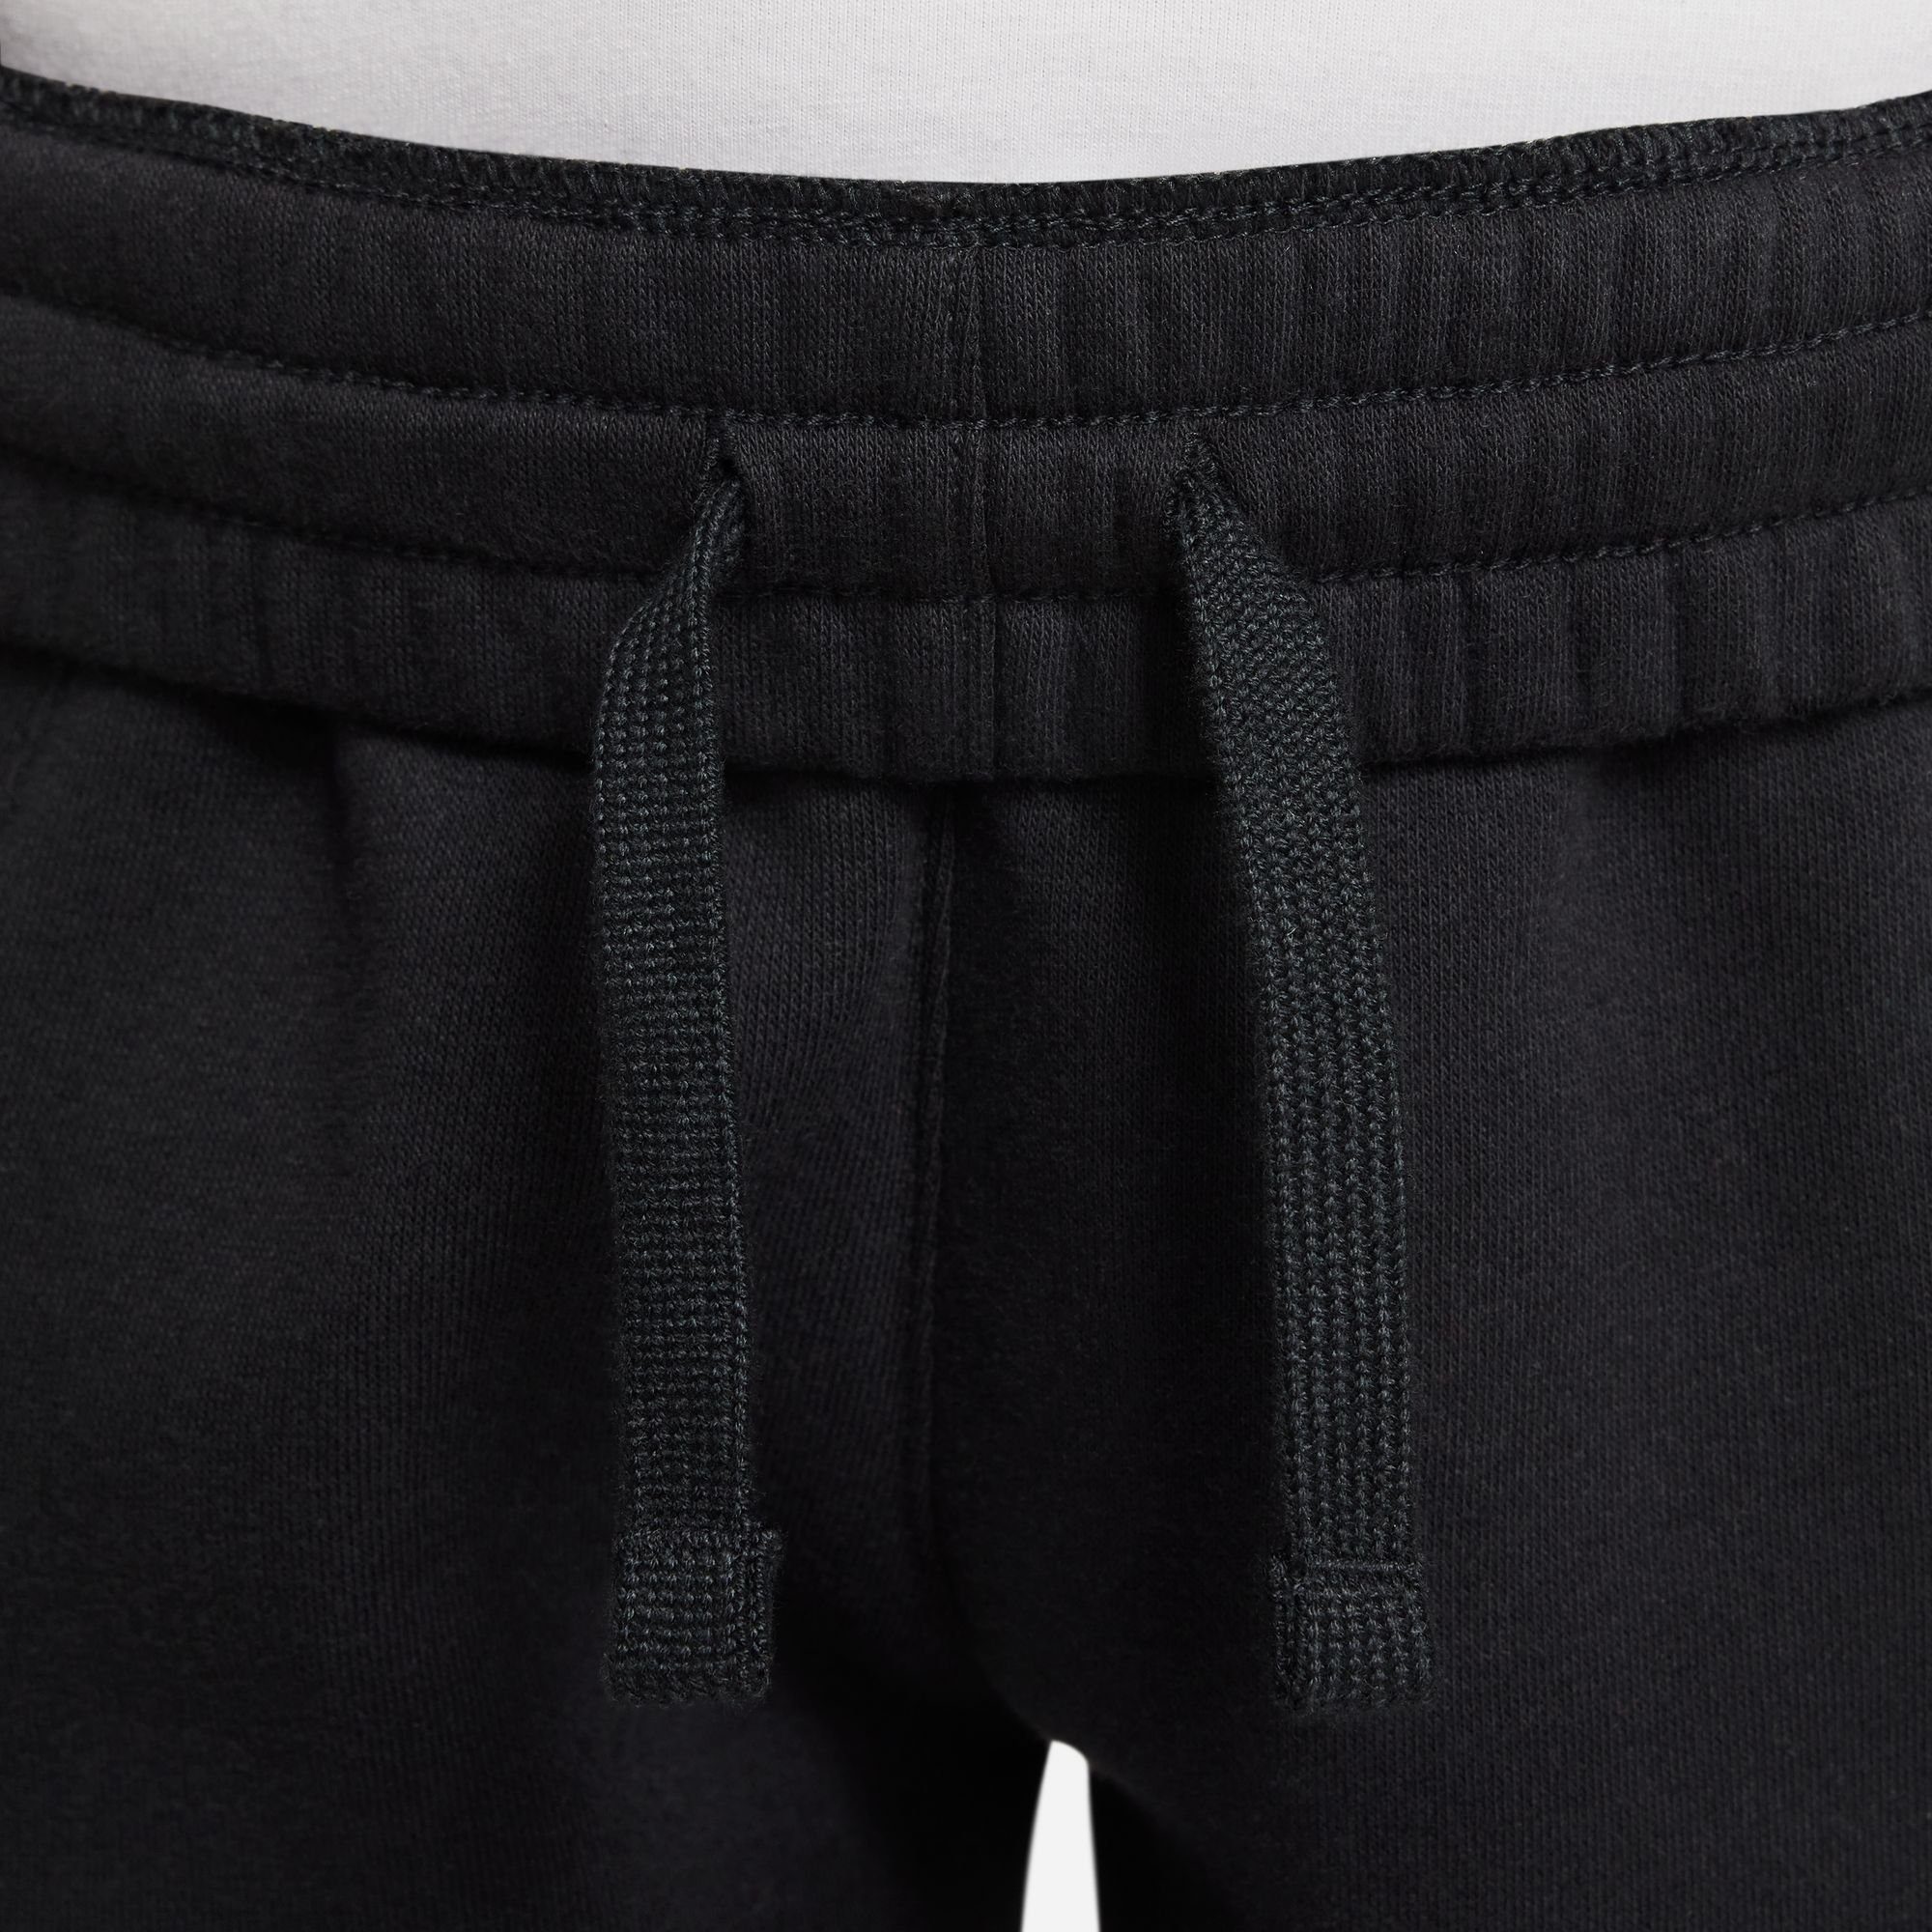 FLEECE Sportswear KIDS' BIG Jogginghose BLACK/WHITE JOGGER PANTS CLUB Nike